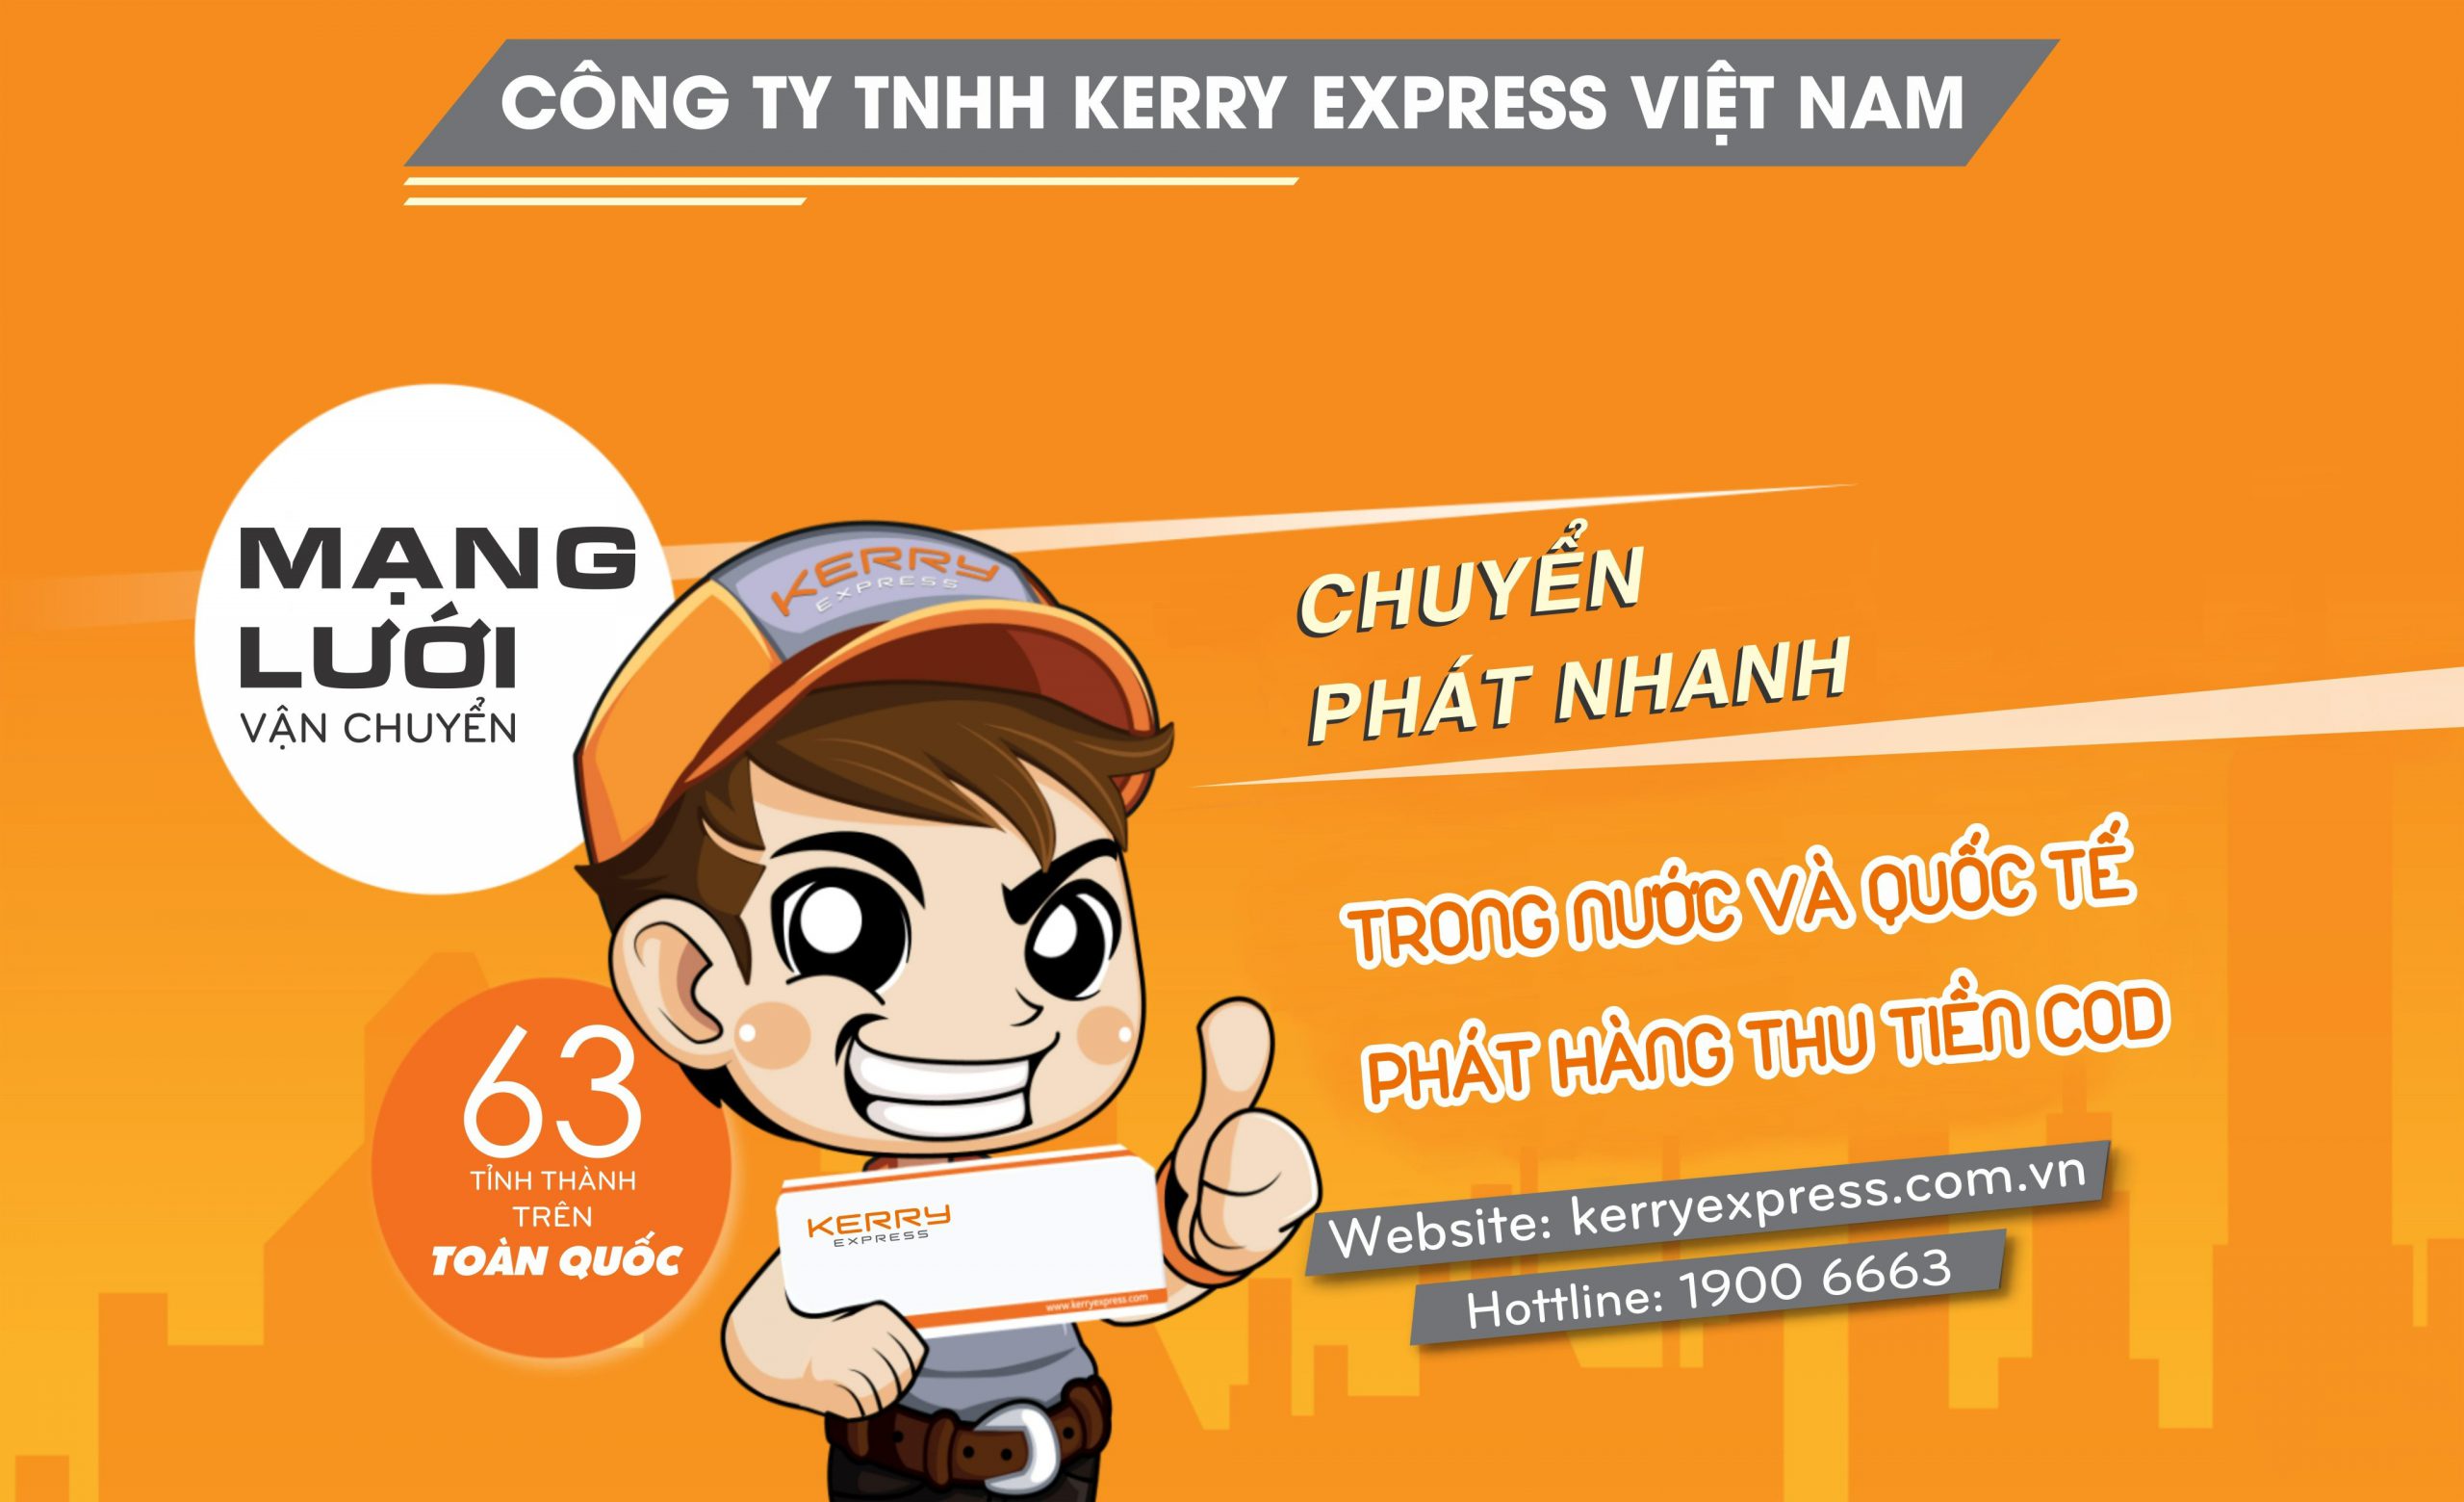 Kerry Express - Chuyển phát nhanh quốc tế giá tốt tại TP. HCM